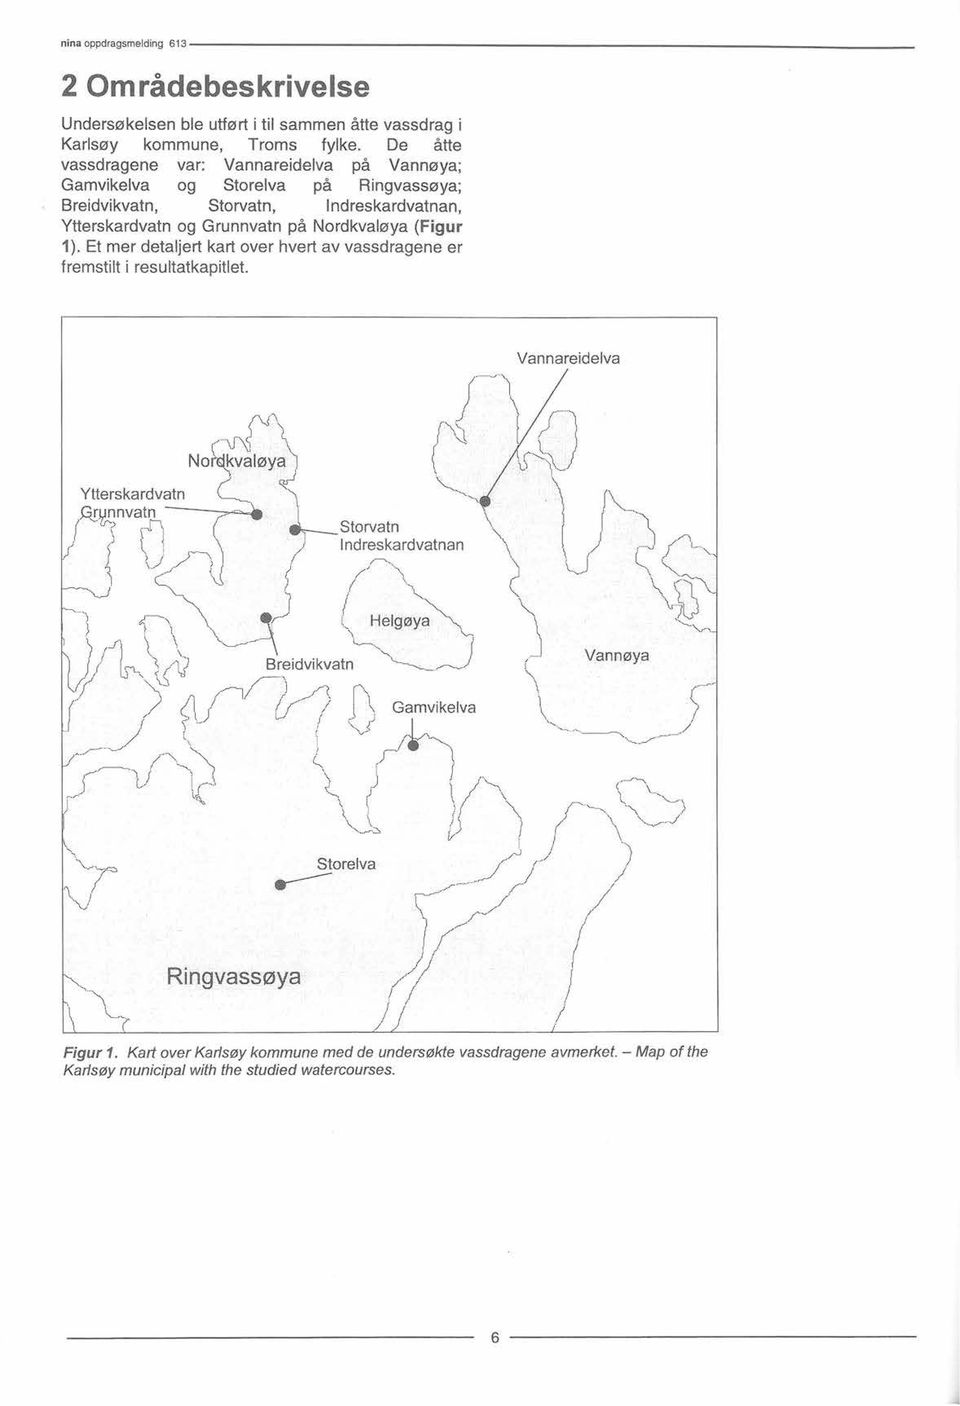 Nordkvaløya (Figur 1). Etmer detaljert kartover hvert av vassdragene er fremstilt i resultatkapitlet.